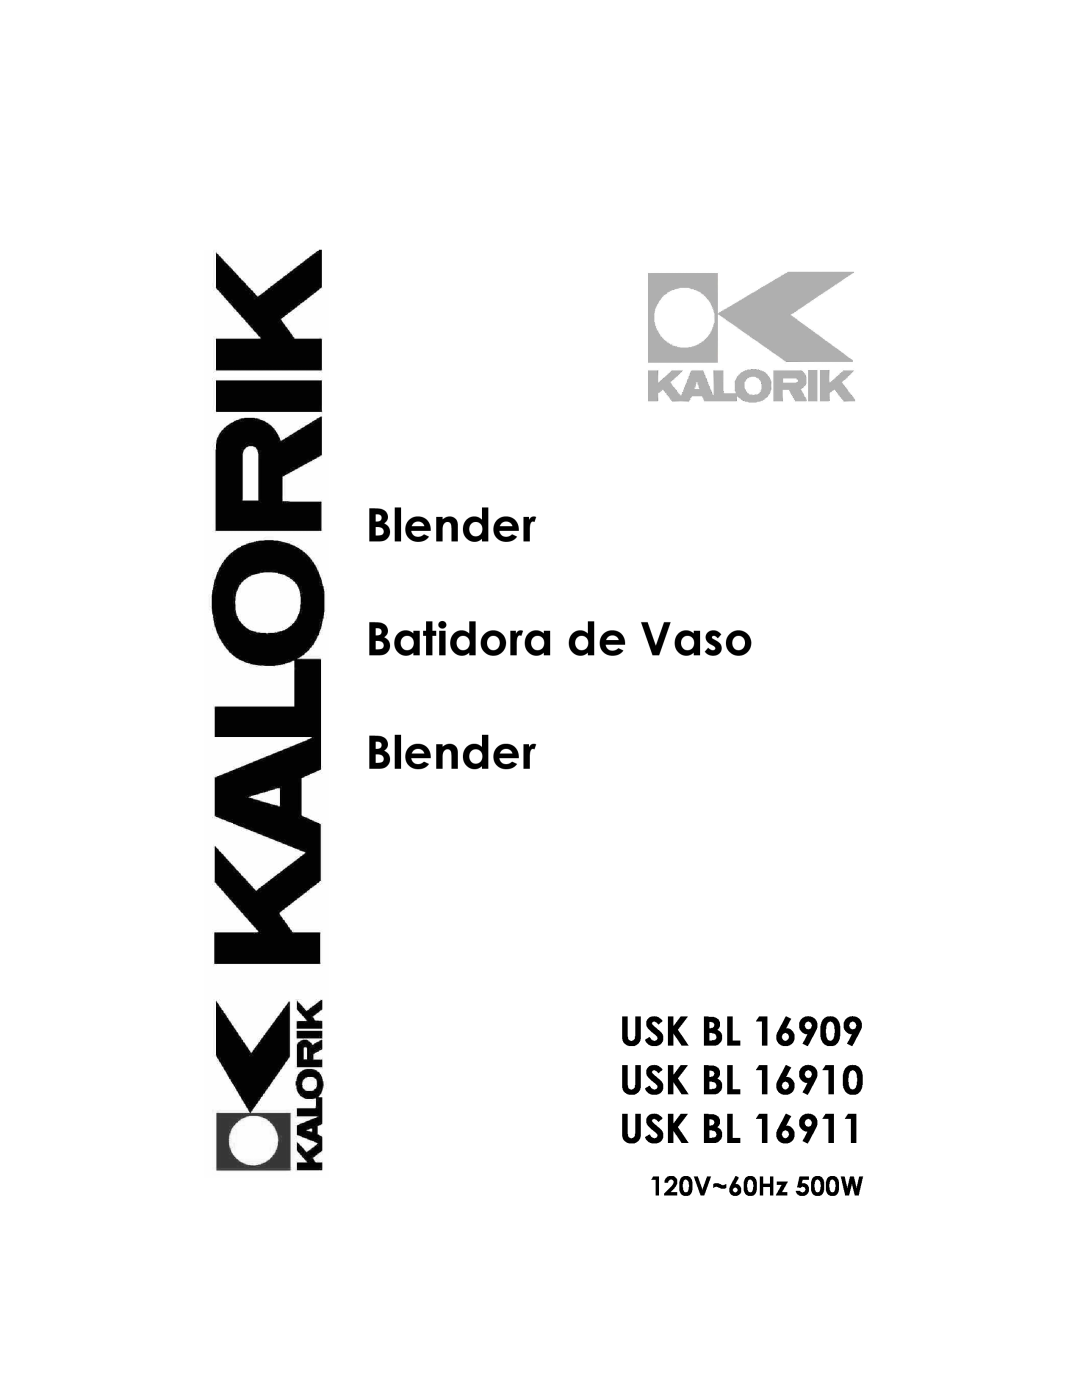 Kalorik USK BL 16910 manual Usk Bl Usk Bl Usk Bl, 120V~60Hz 500W, Blender Batidora de Vaso Blender 